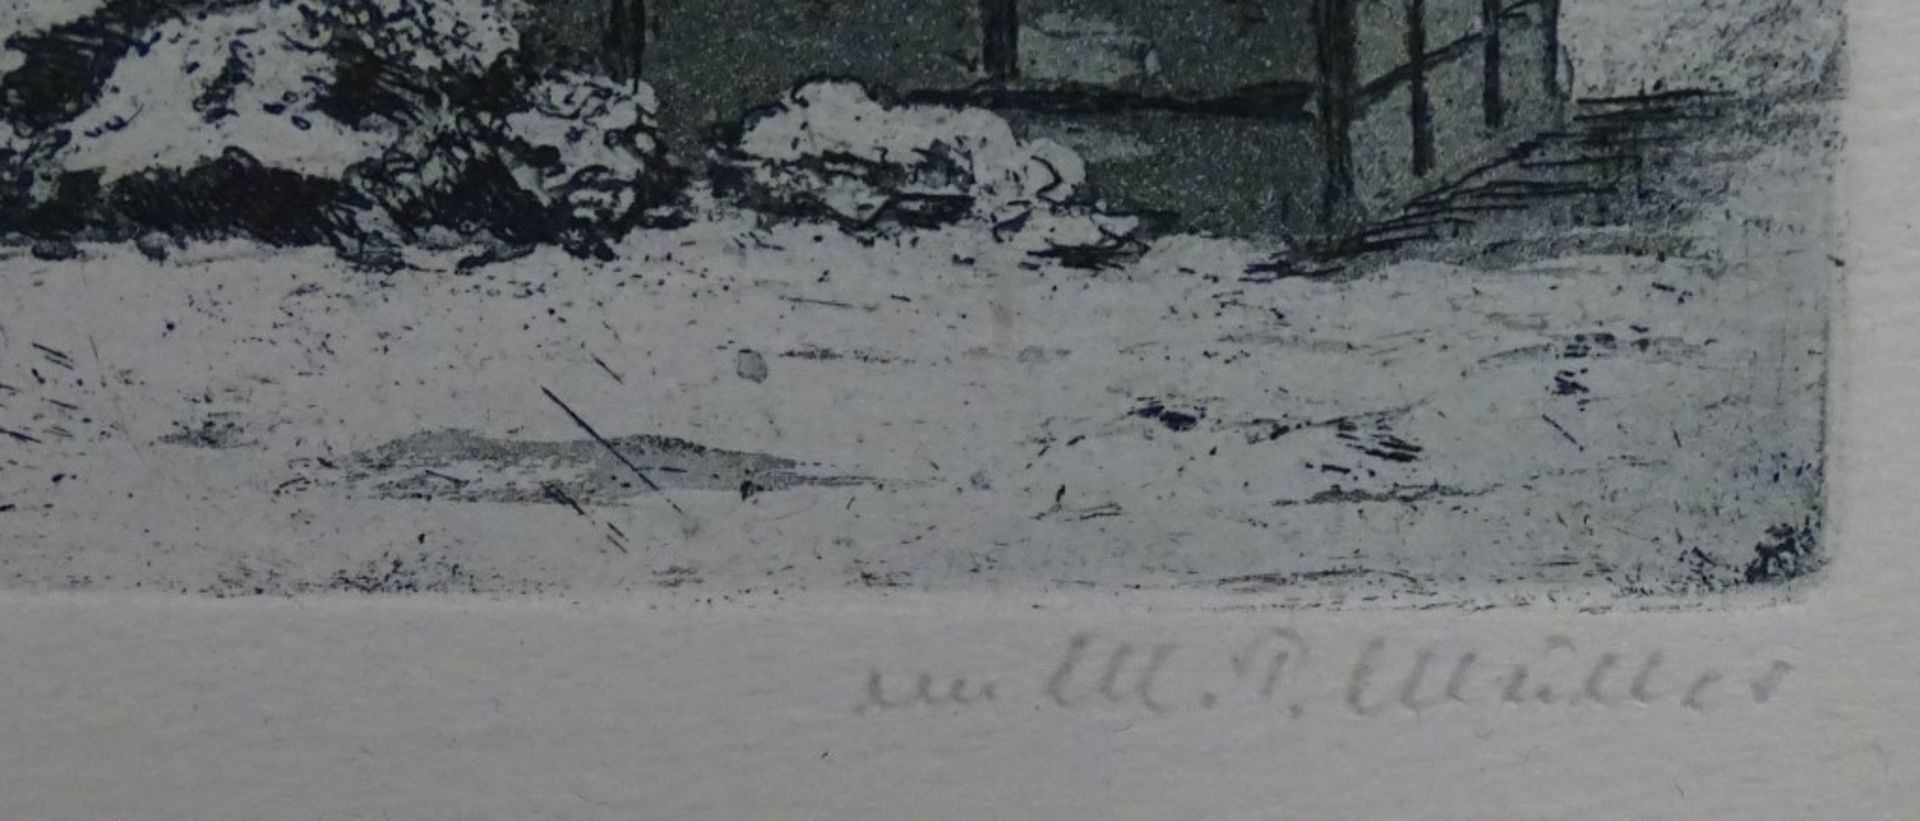 Martin Paul MÜLLER (1874-1936) "Slottschün" Radierung, signiert,ger/Glas,RG 22,5x27,5cm, MG 9,0x14 - Bild 3 aus 5